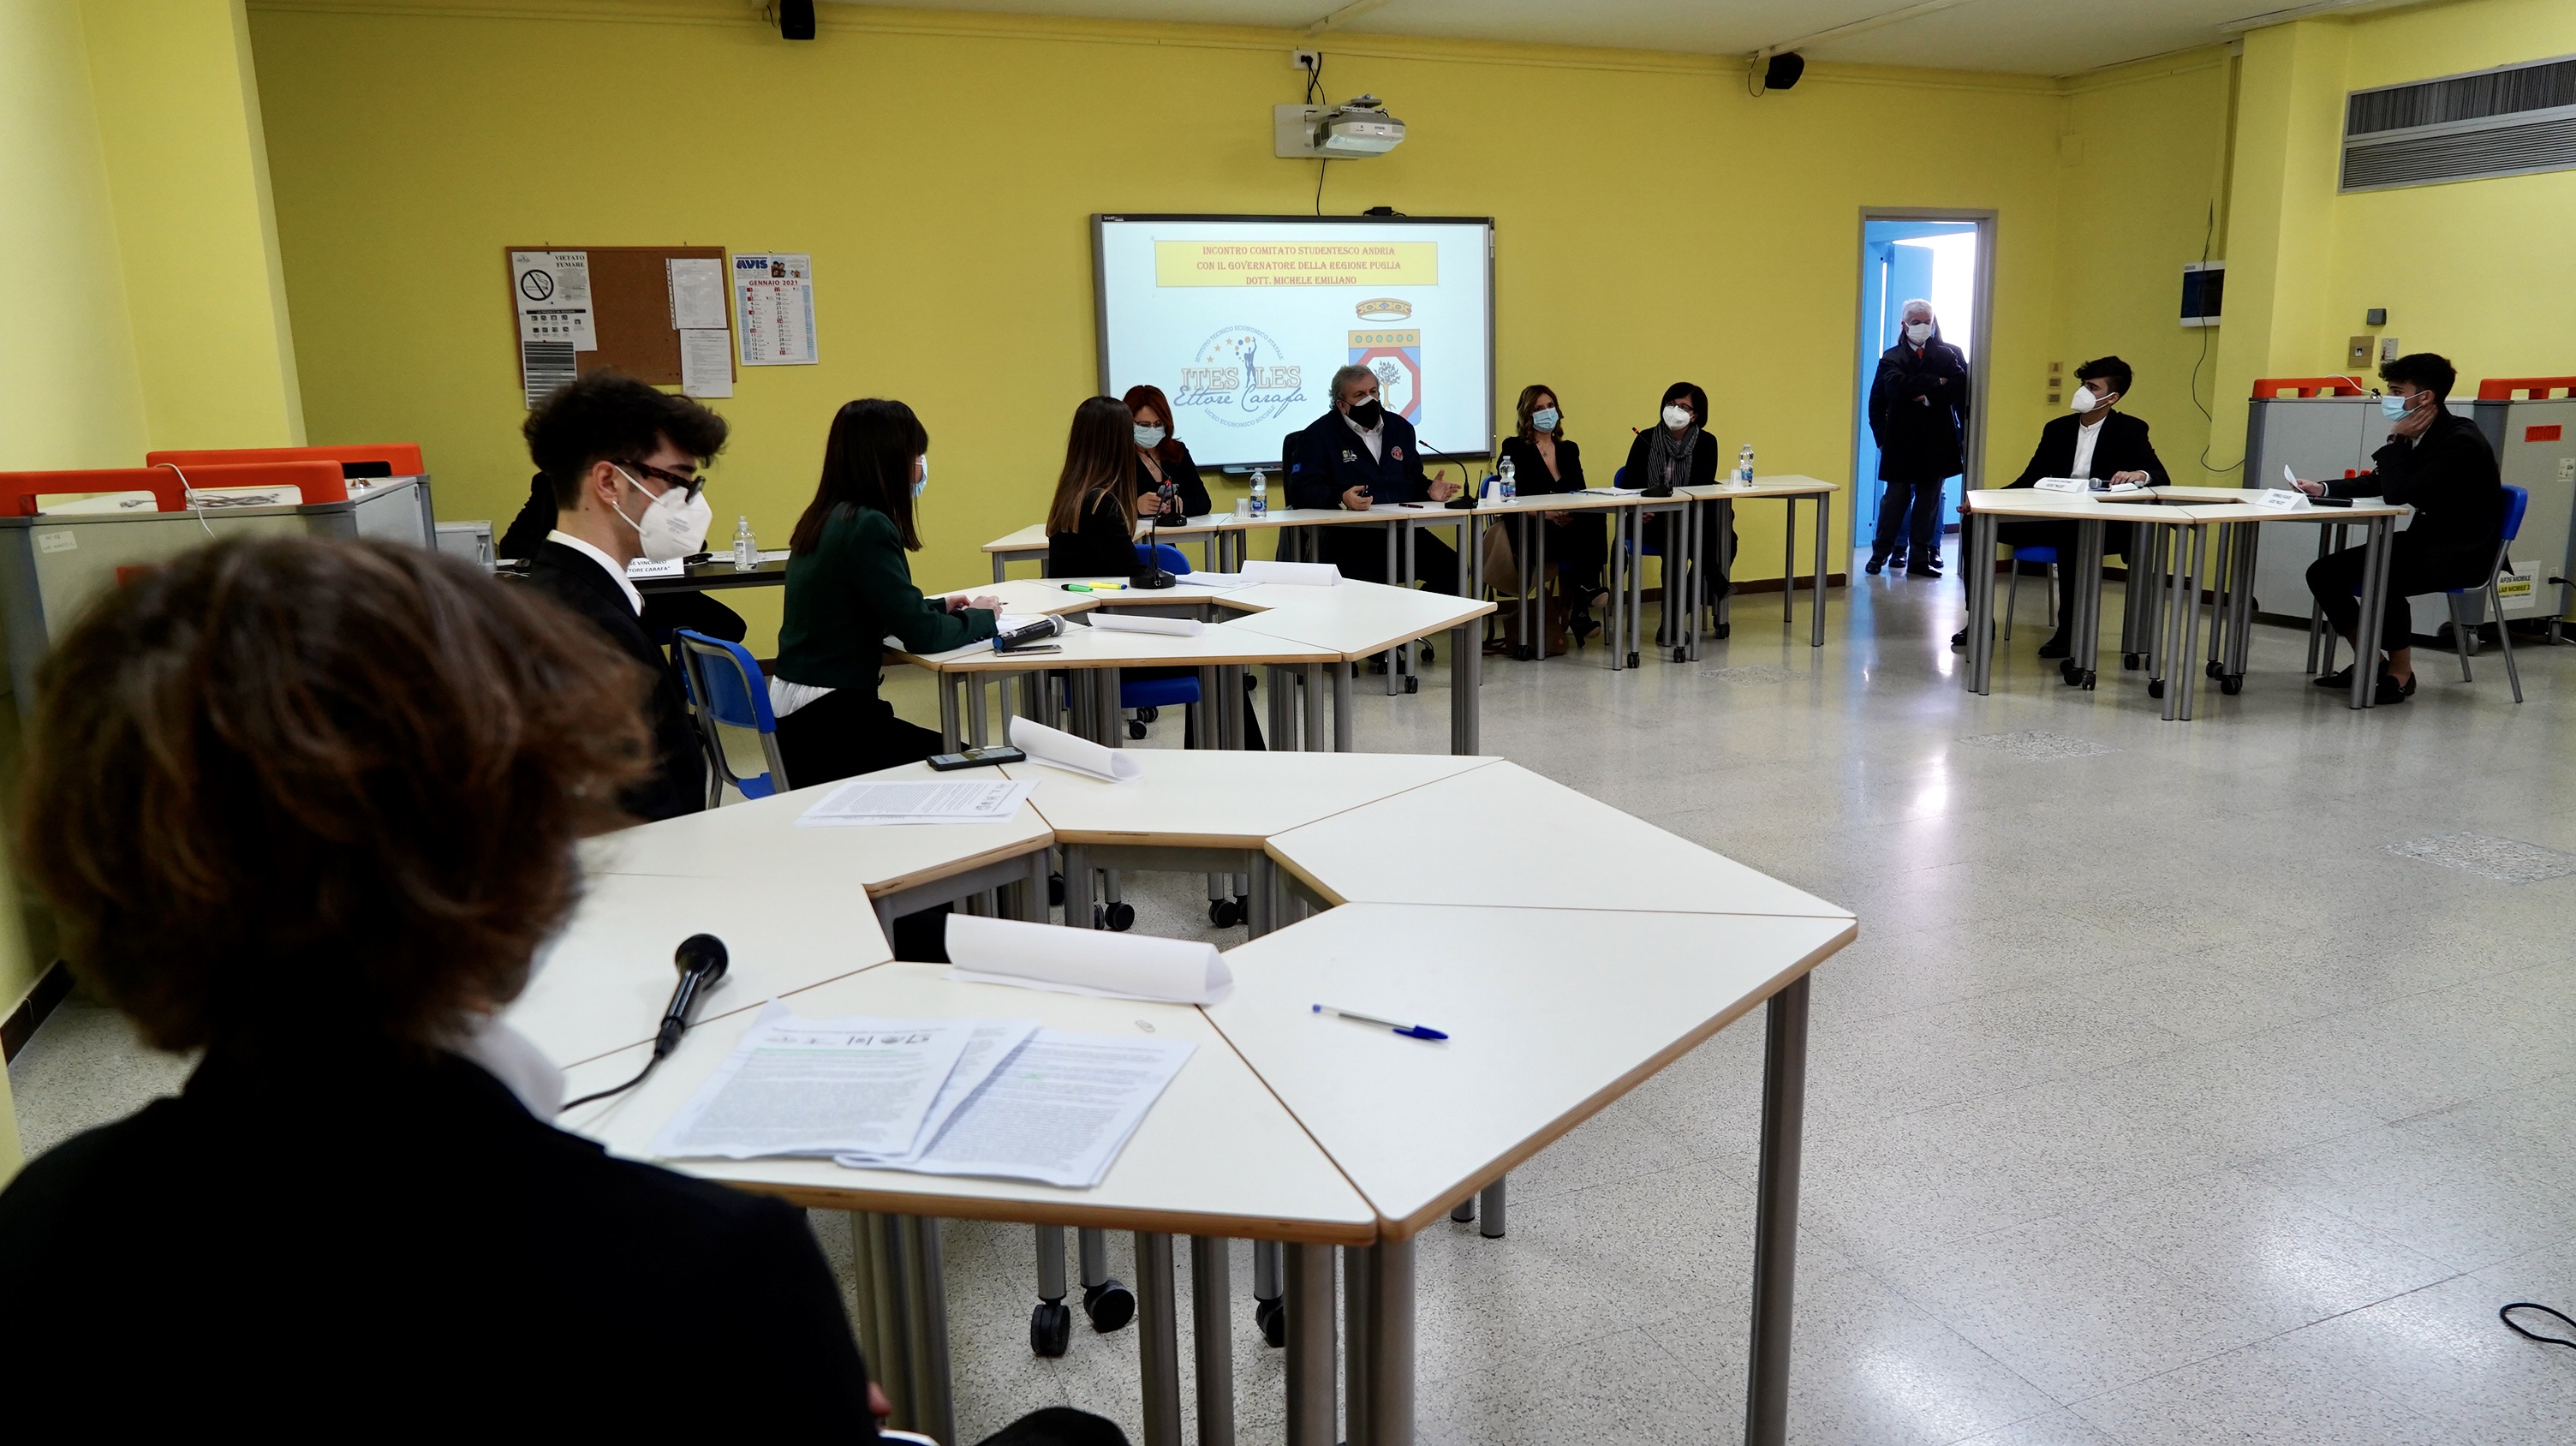 Galleria Scuola, Emiliano oggi ad Andria per un dibattito con gli studenti - Diapositiva 7 di 11